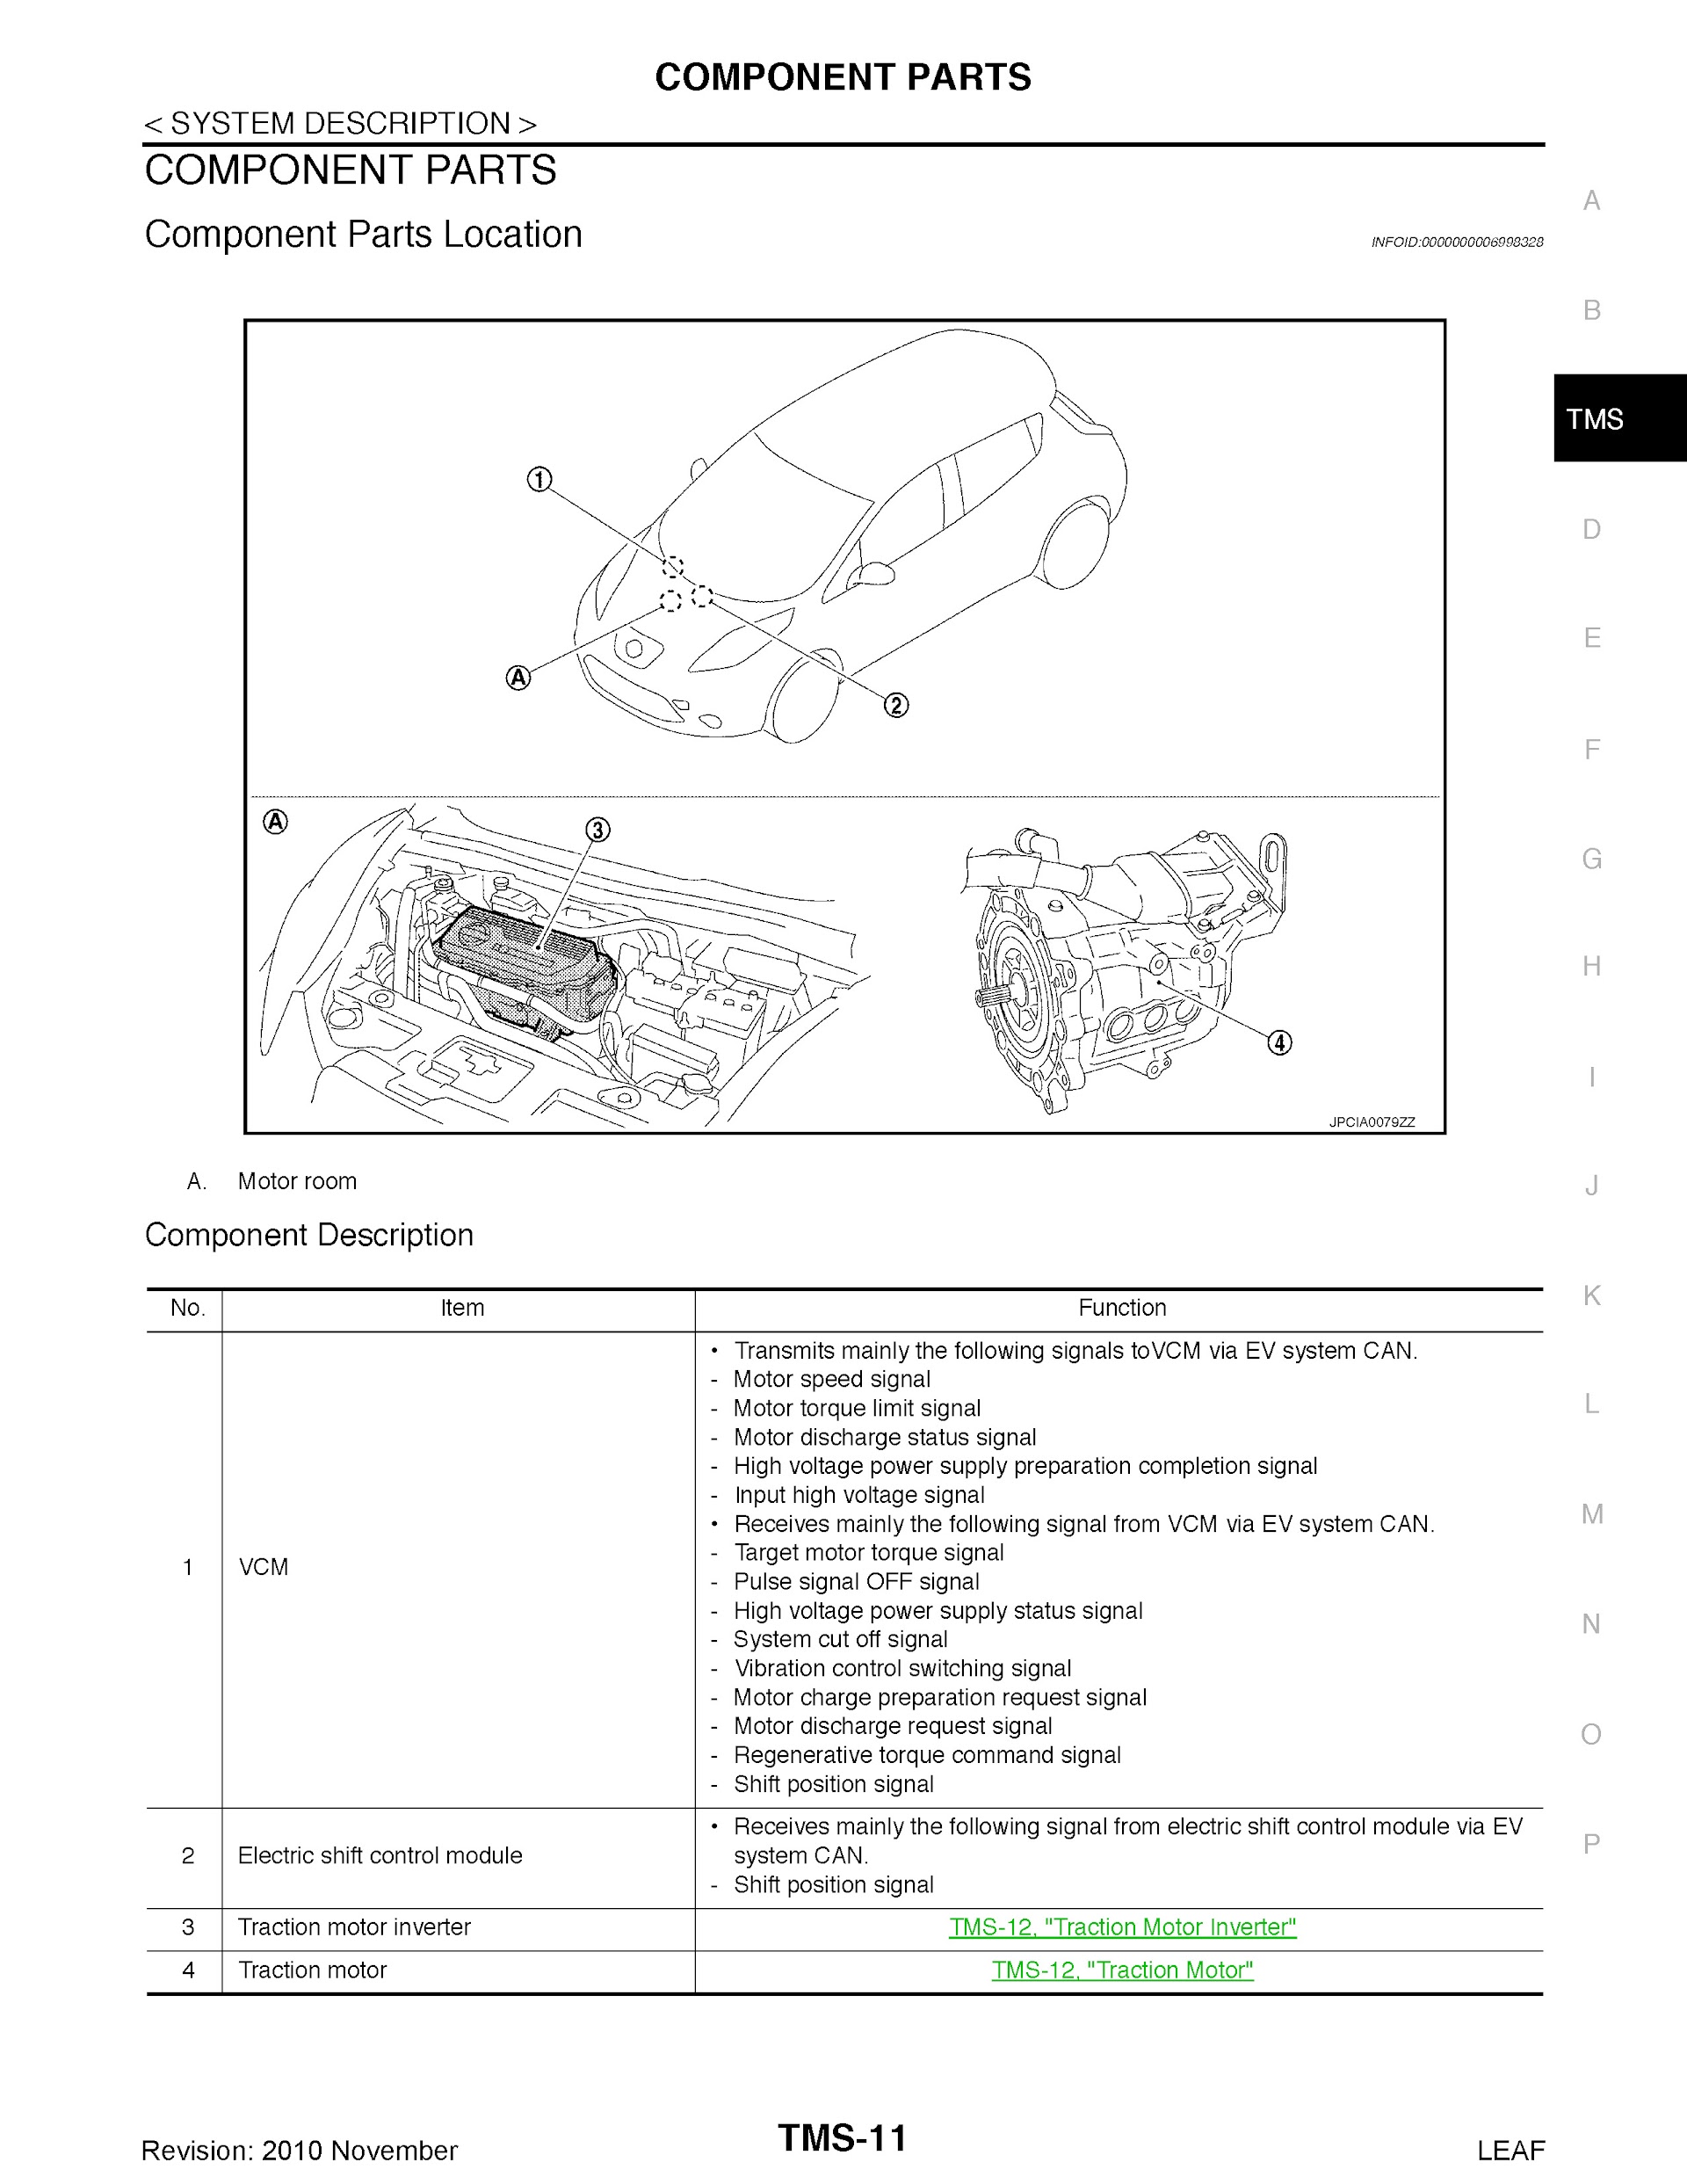 Download 2010-2011 Nissan Leaf Repair Manual.